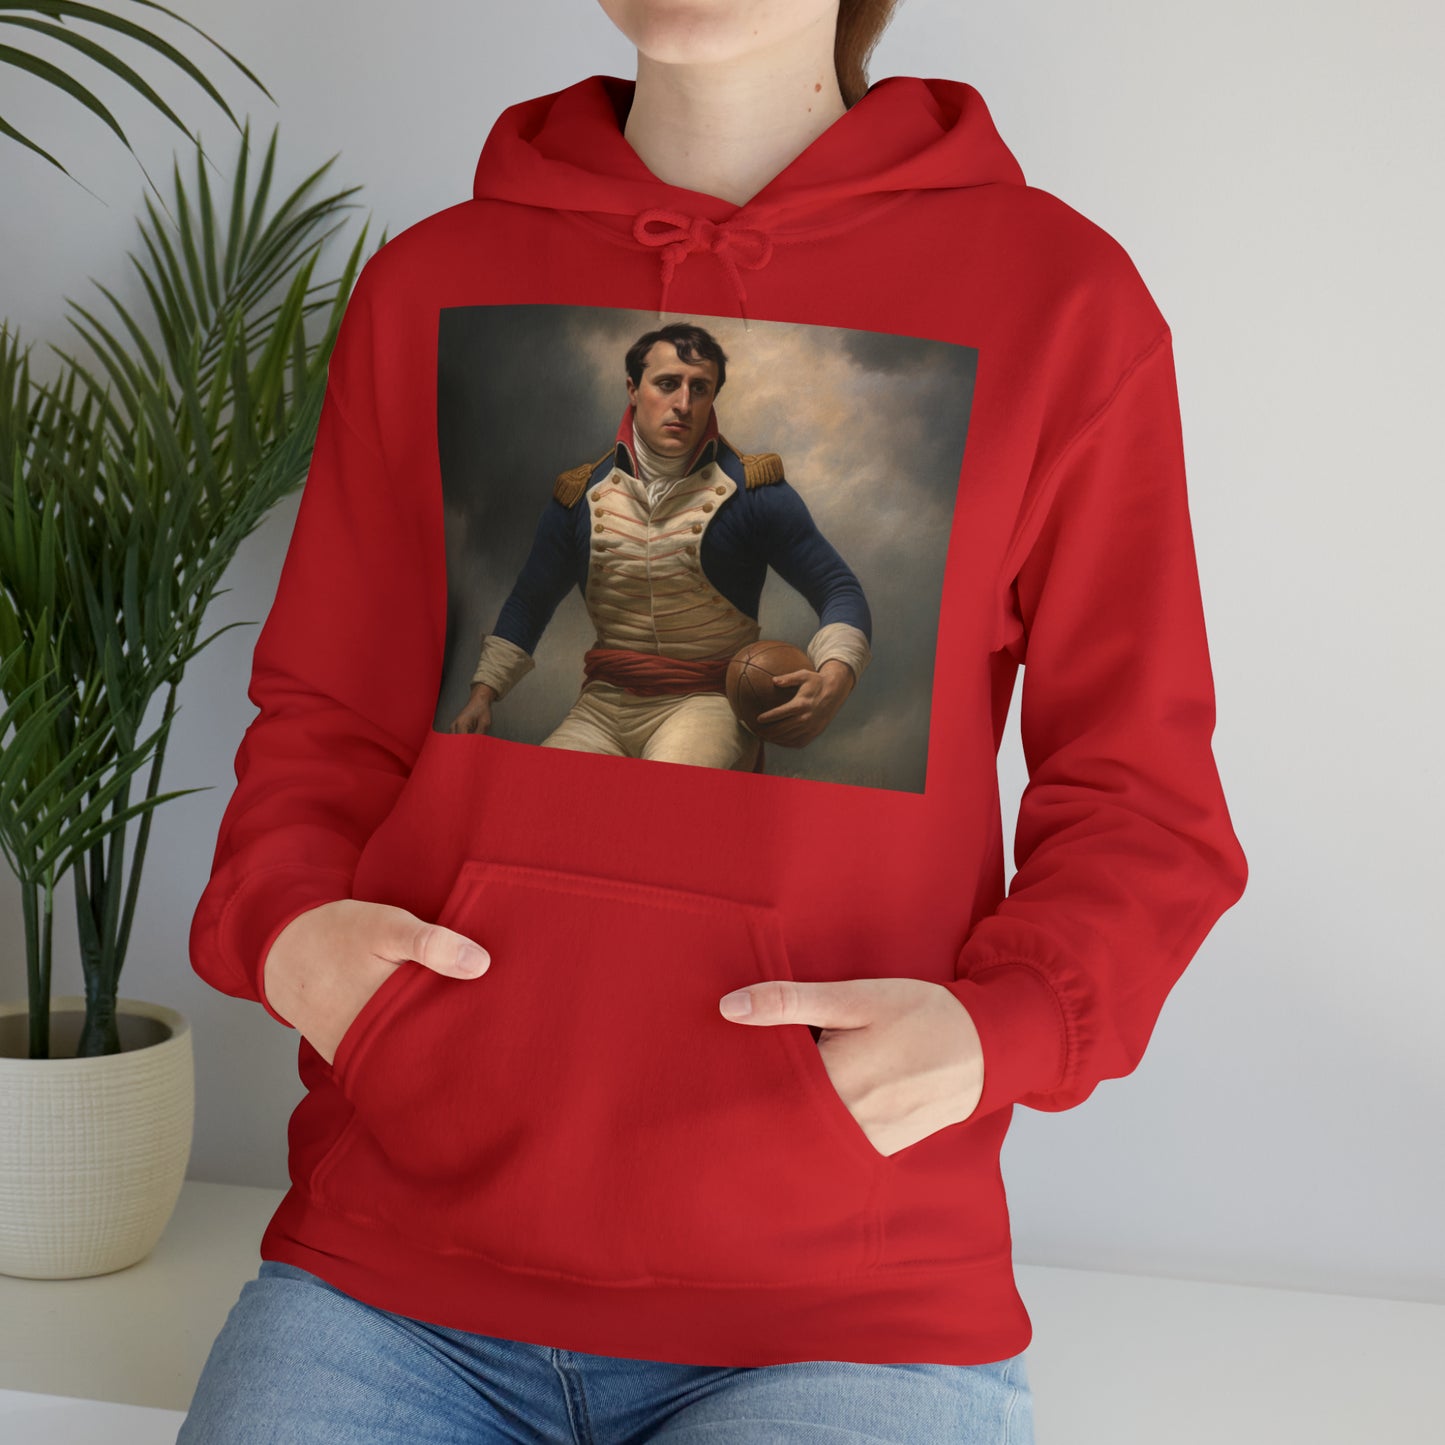 Napoleon Rugby - dark hoodies